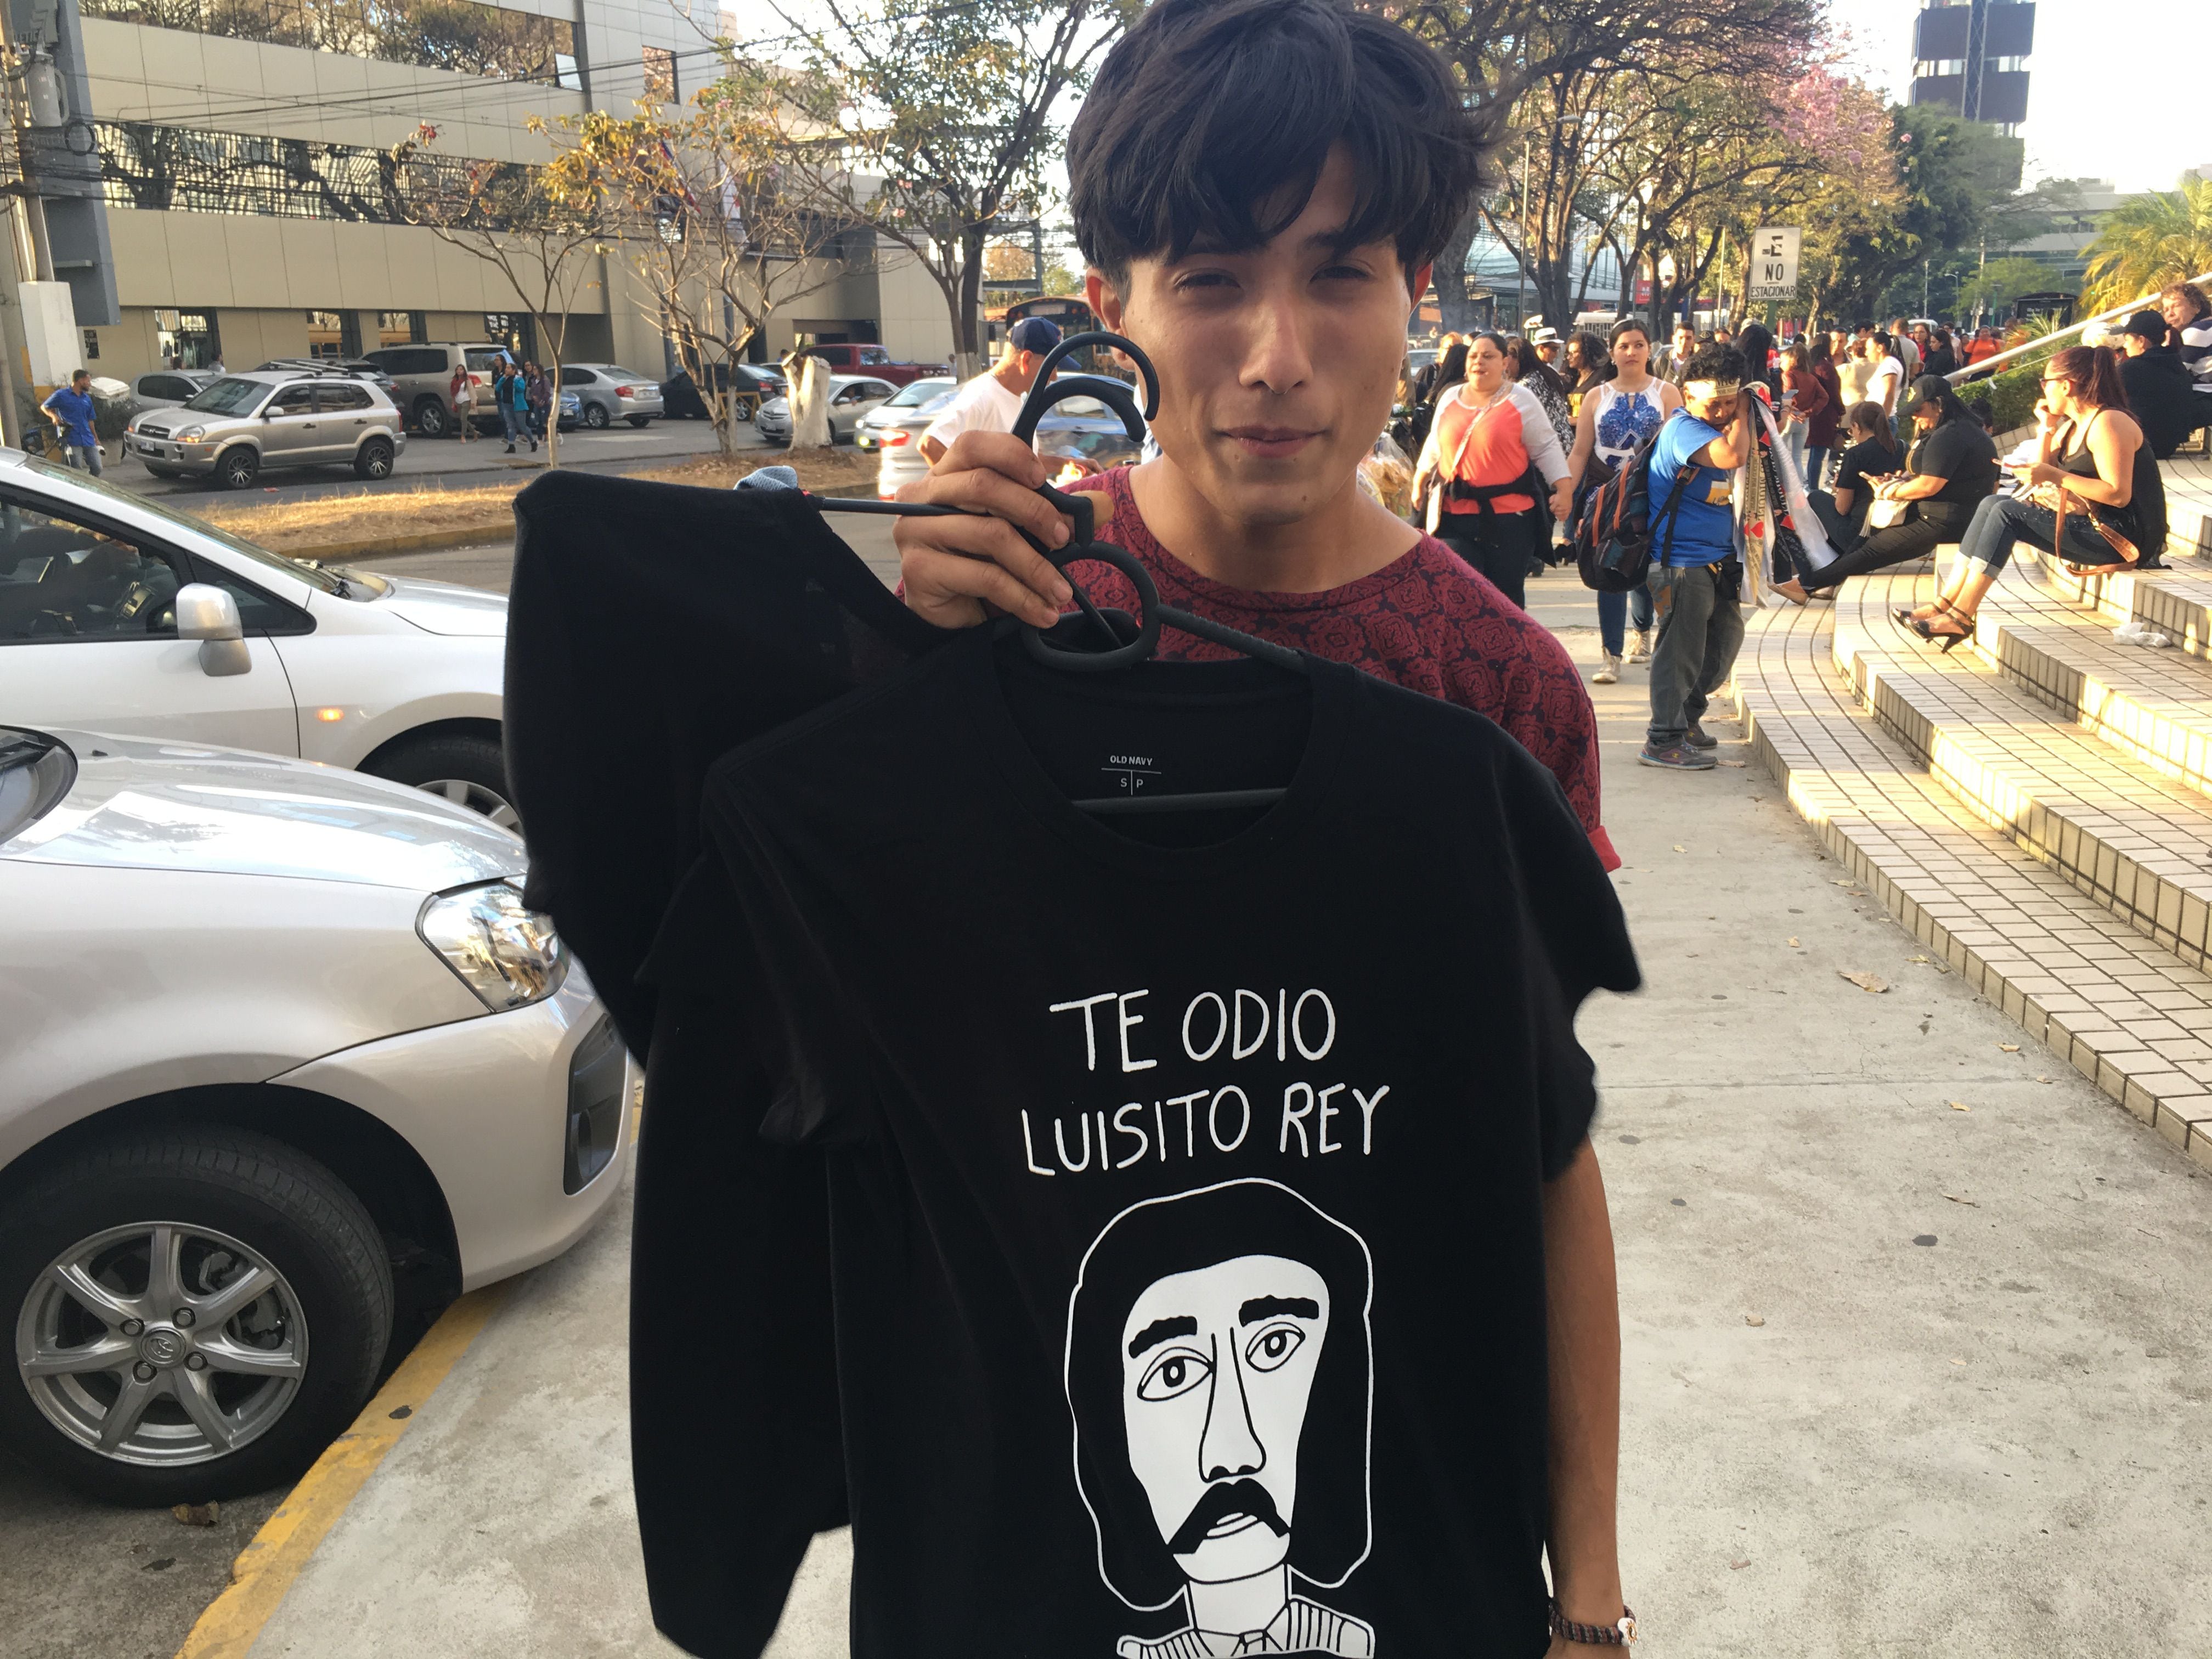 Camisas con la frase 'Te odio Rey' y blancas esperan a fans de Luis en las afueras del Estadio | La Nación